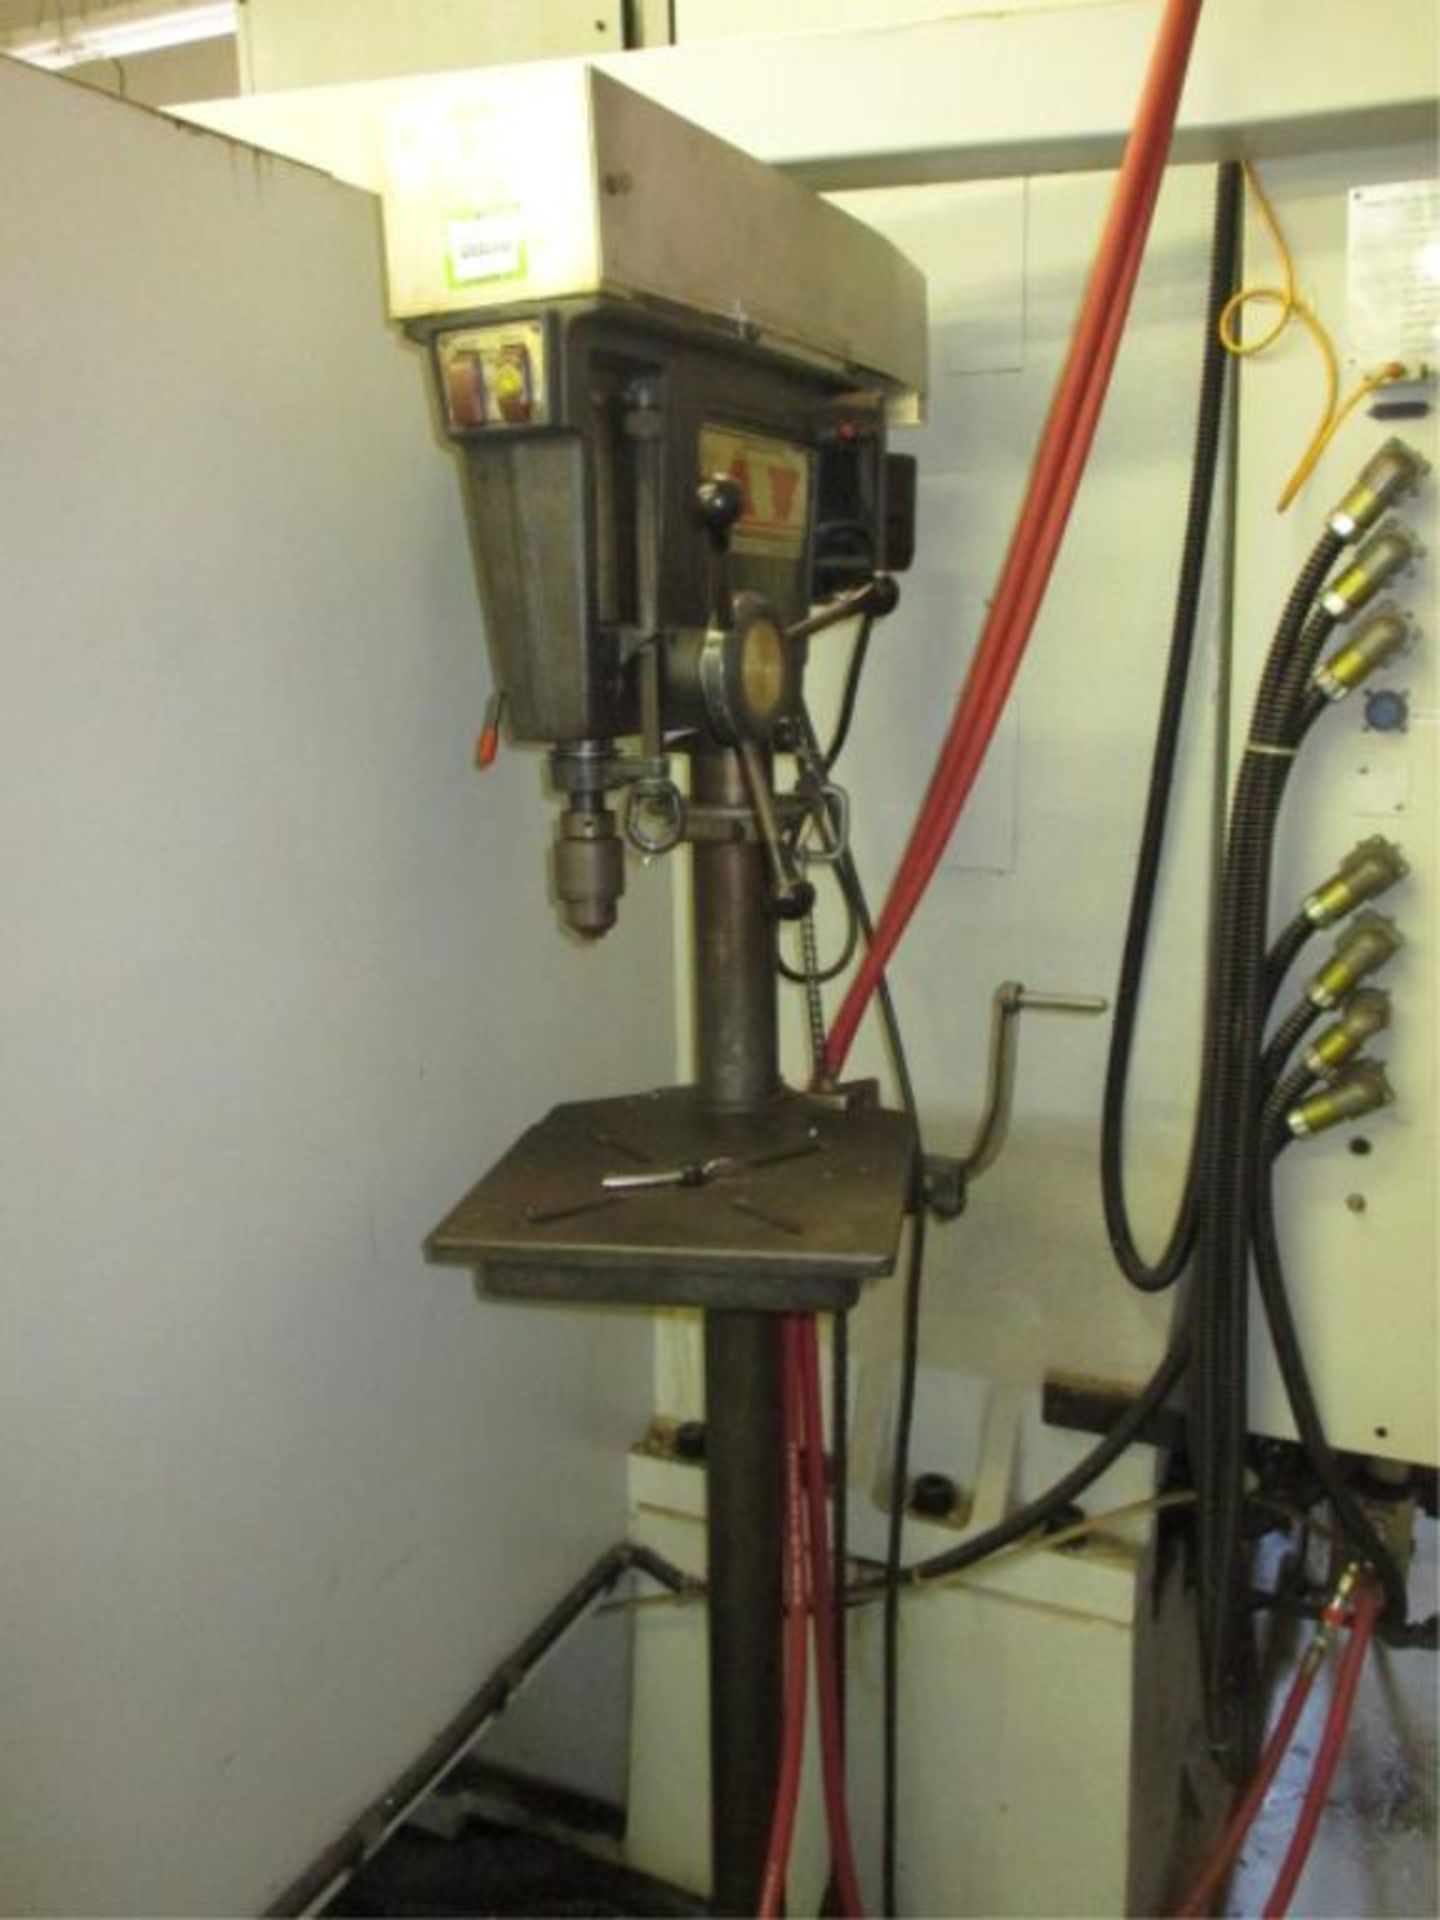 Drill Press. Sears, Roebuck & Co 113.21378 15.5" Drill Press, 1/2 HP. HIT# 2205847. CNC Room.